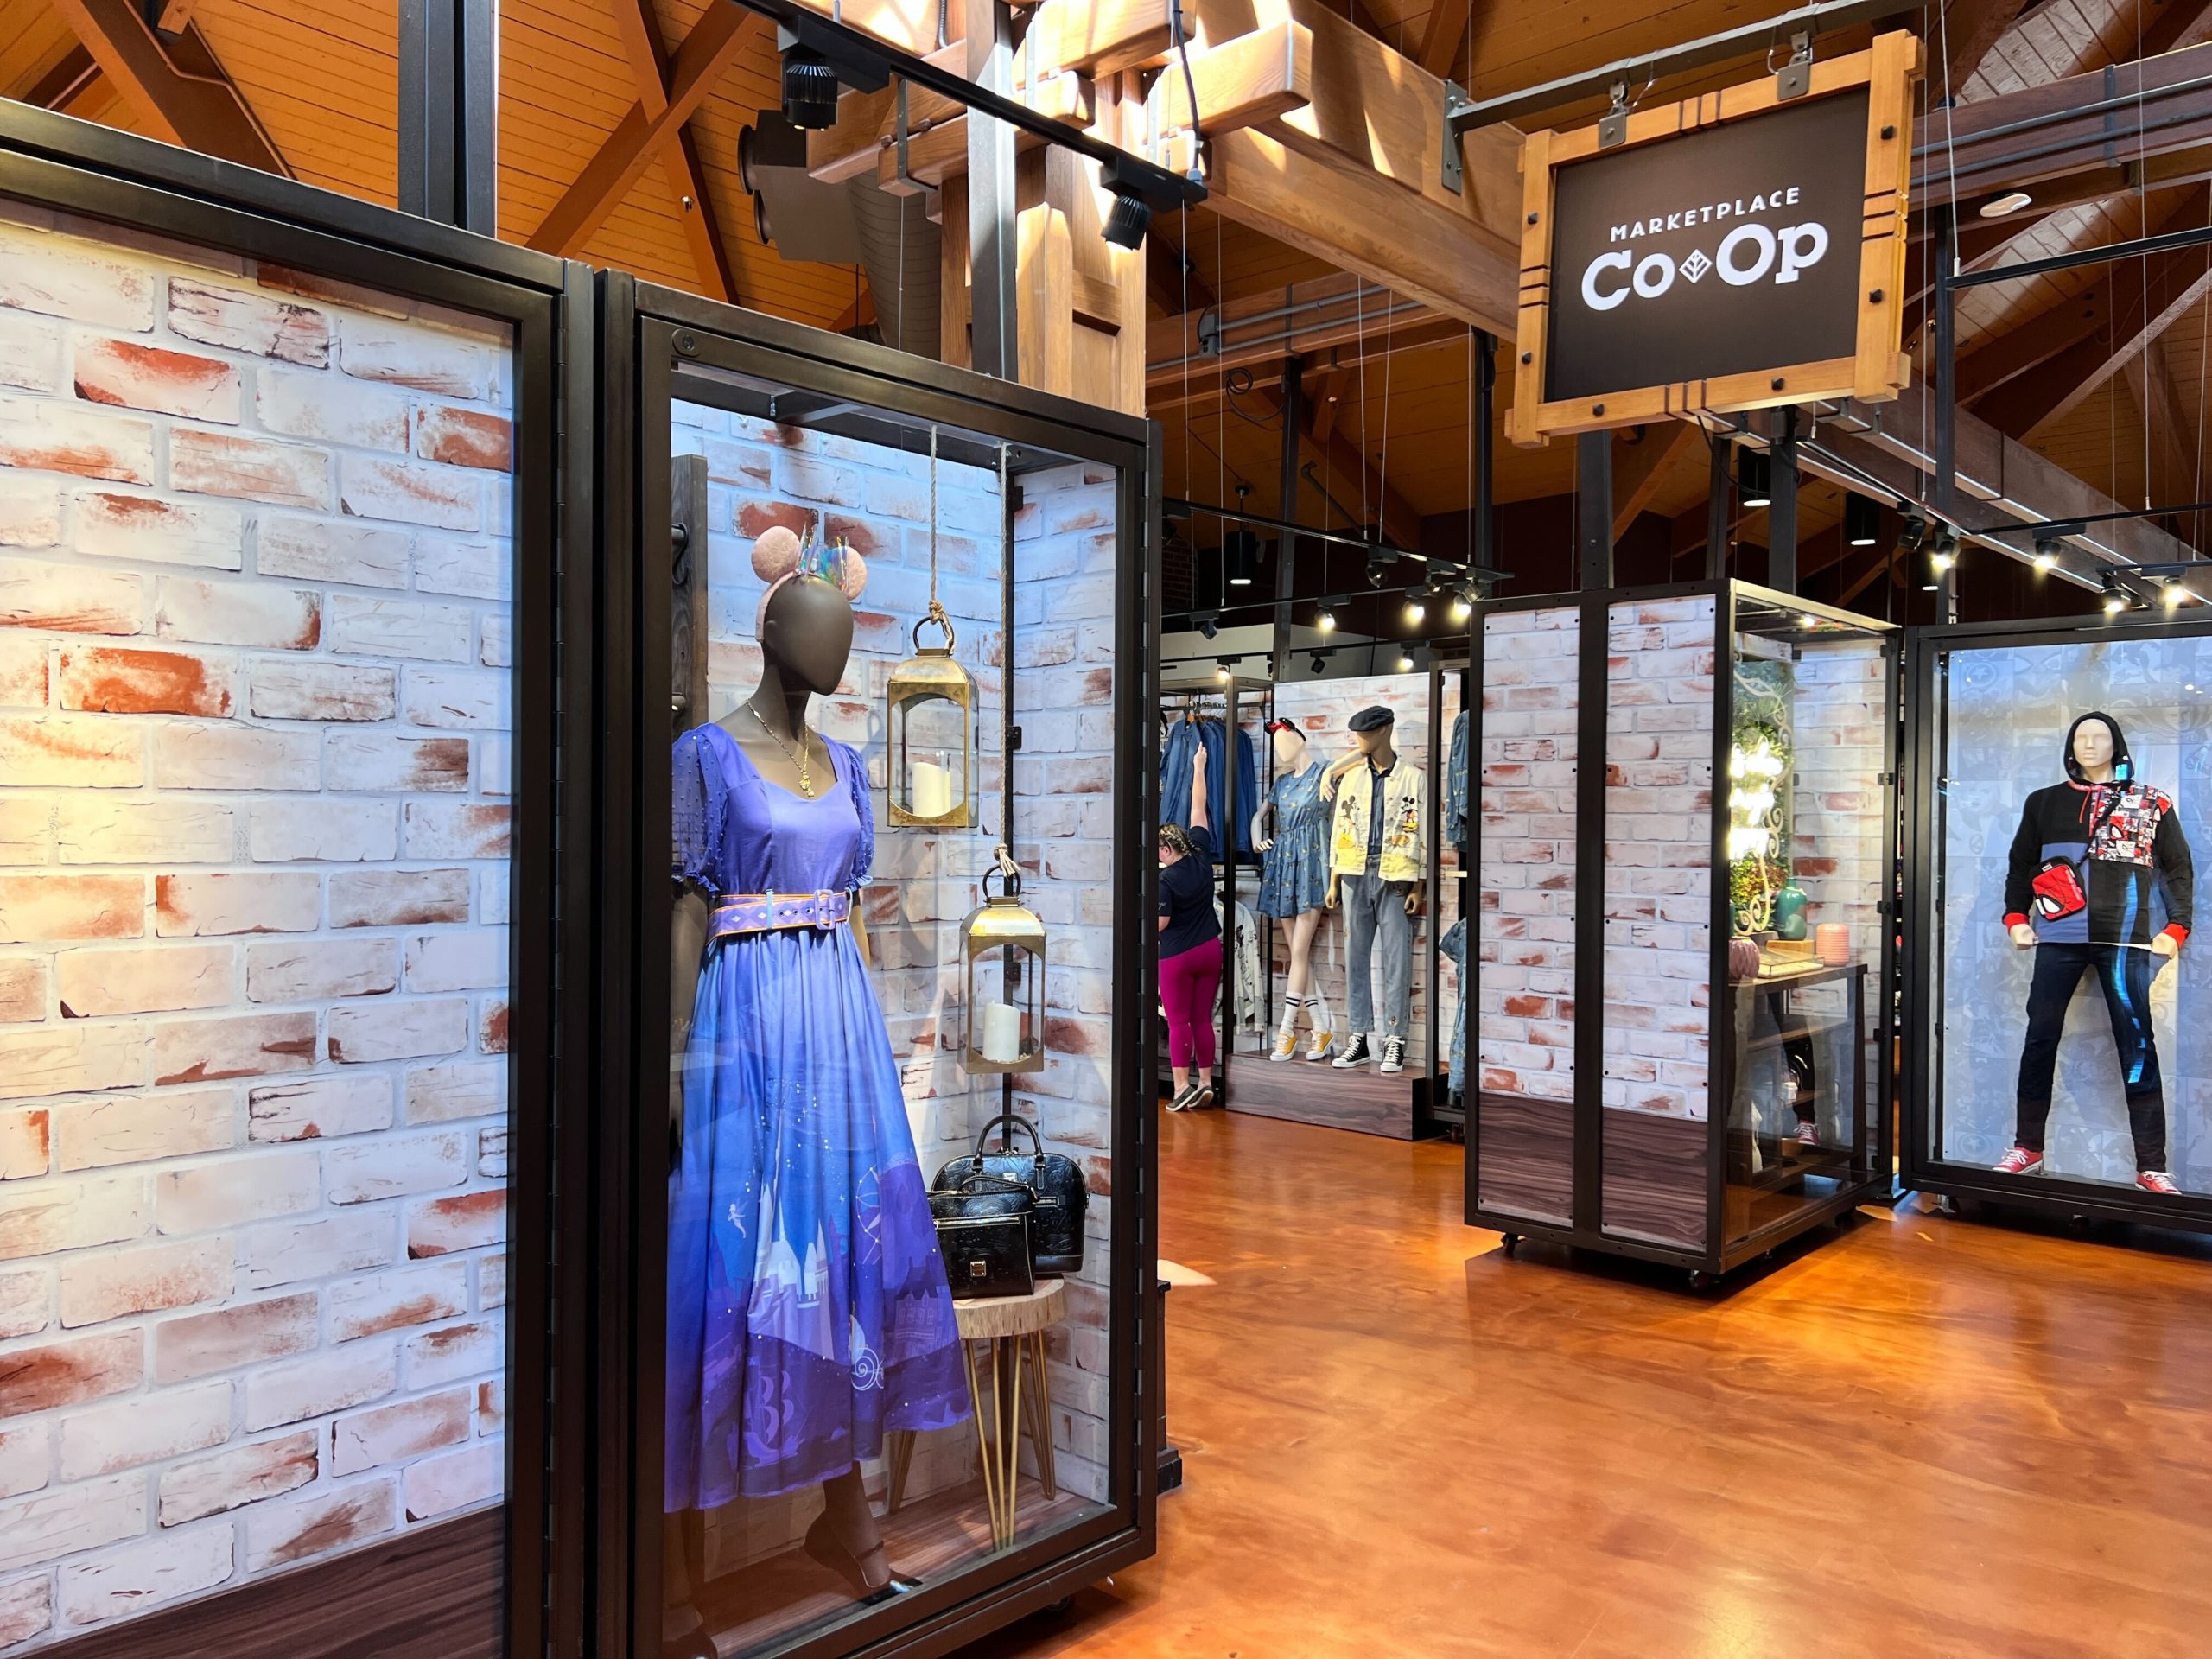 The Dress Shop Marketplace Co-op